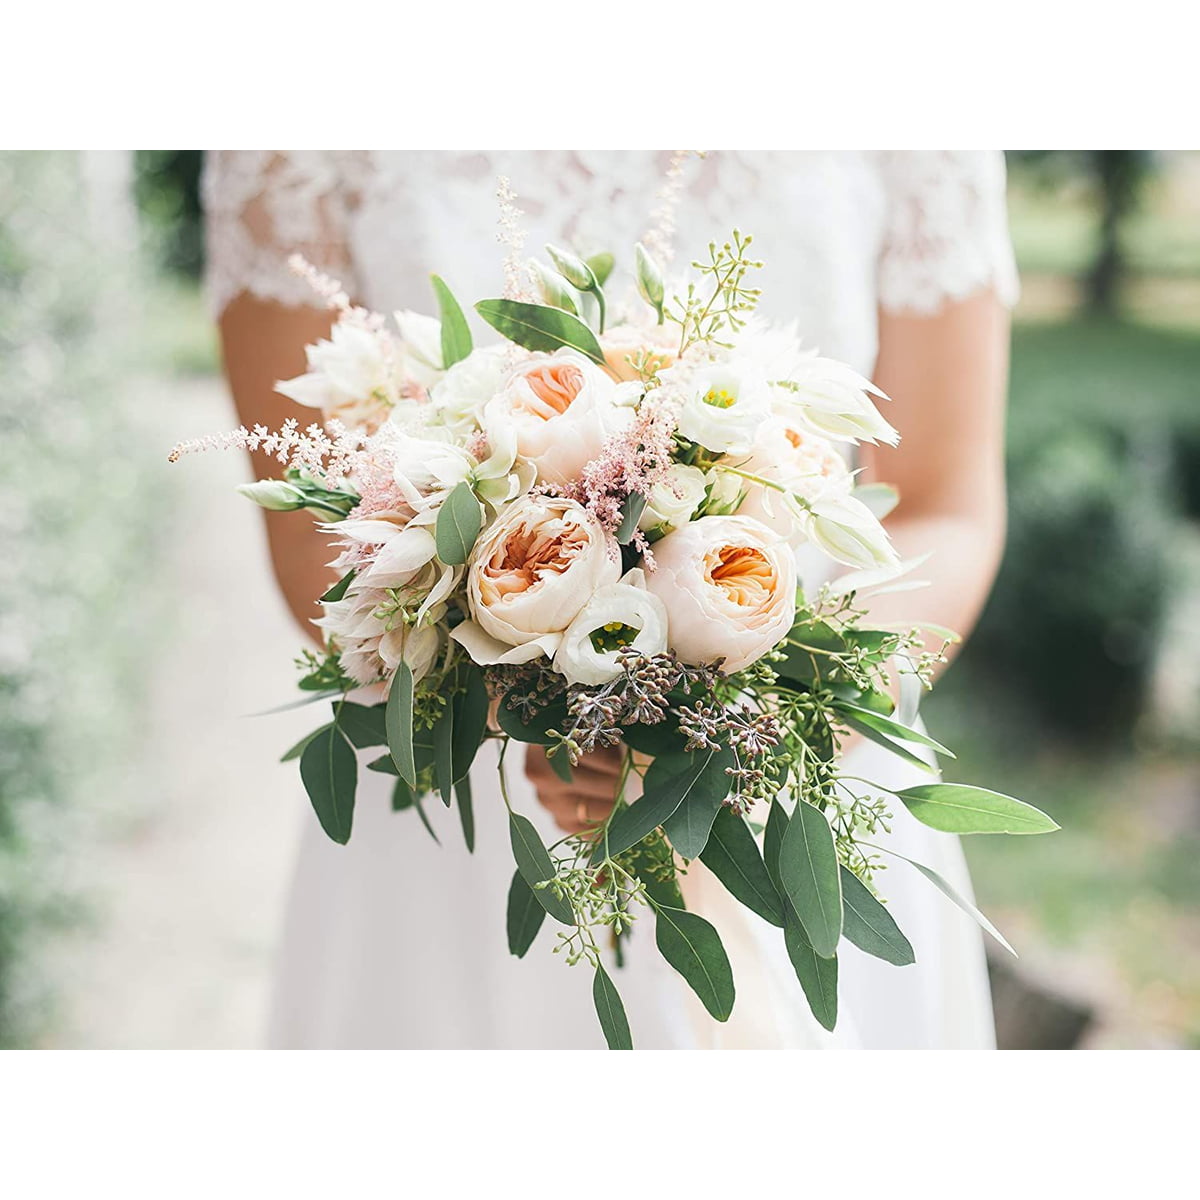 Bridal Wedding Flower Decoration White Bouquet Foam Holder Handle Grip Supplies 